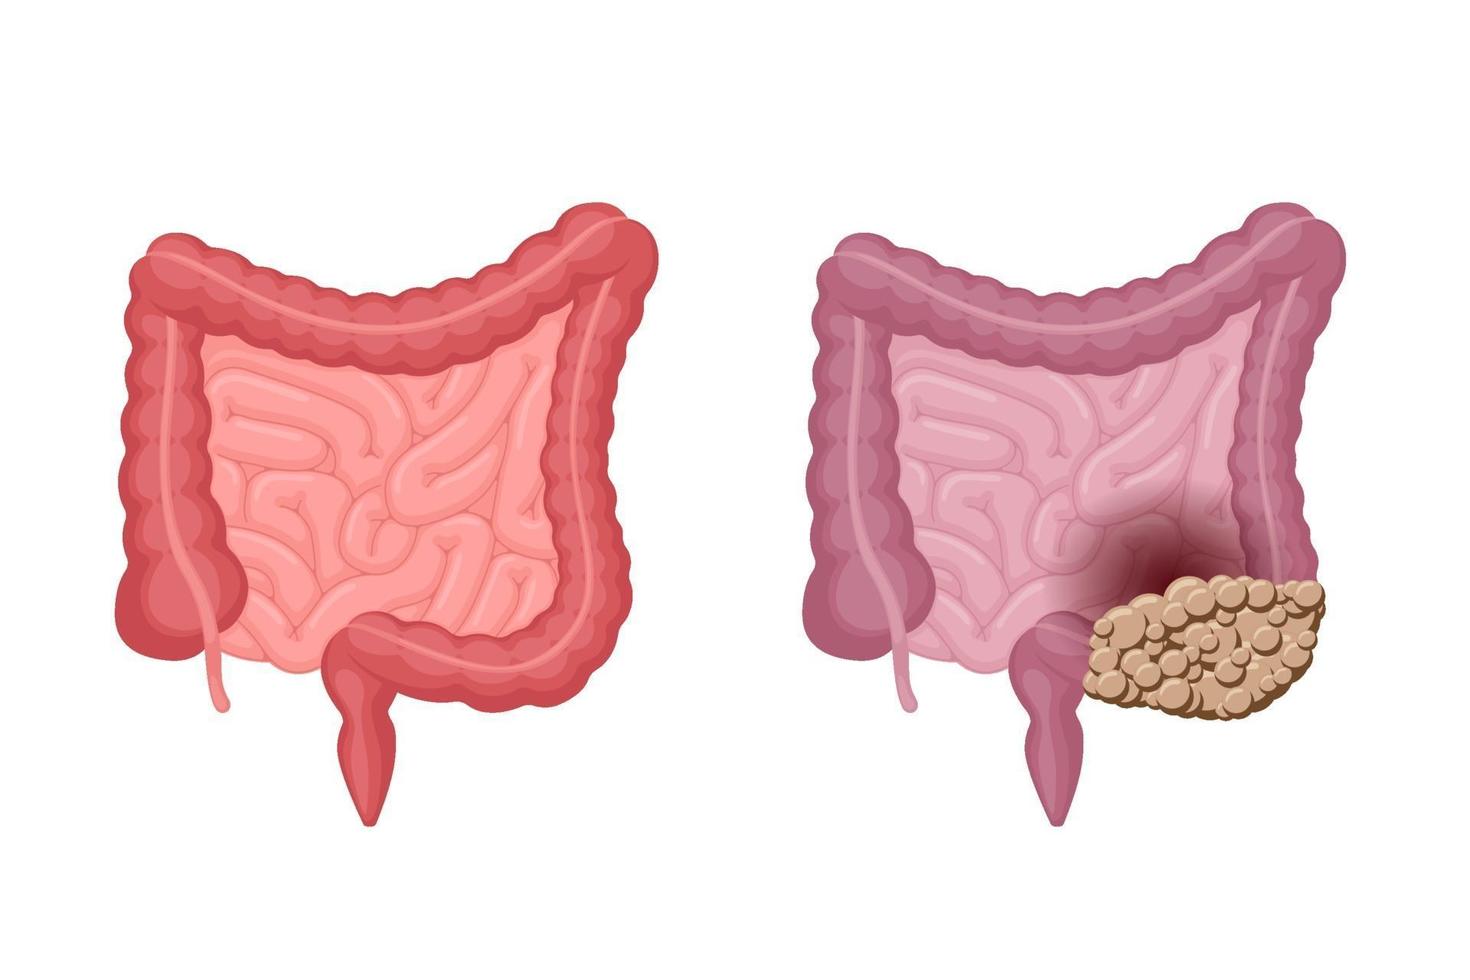 Anatomía de los intestinos humanos fuerte, saludable e insalubre con la comparación del cáncer de colon. tumor de oncología de órganos internos digestivo y excretor de la cavidad abdominal. problema de digestión vectorial eps ilustración vector